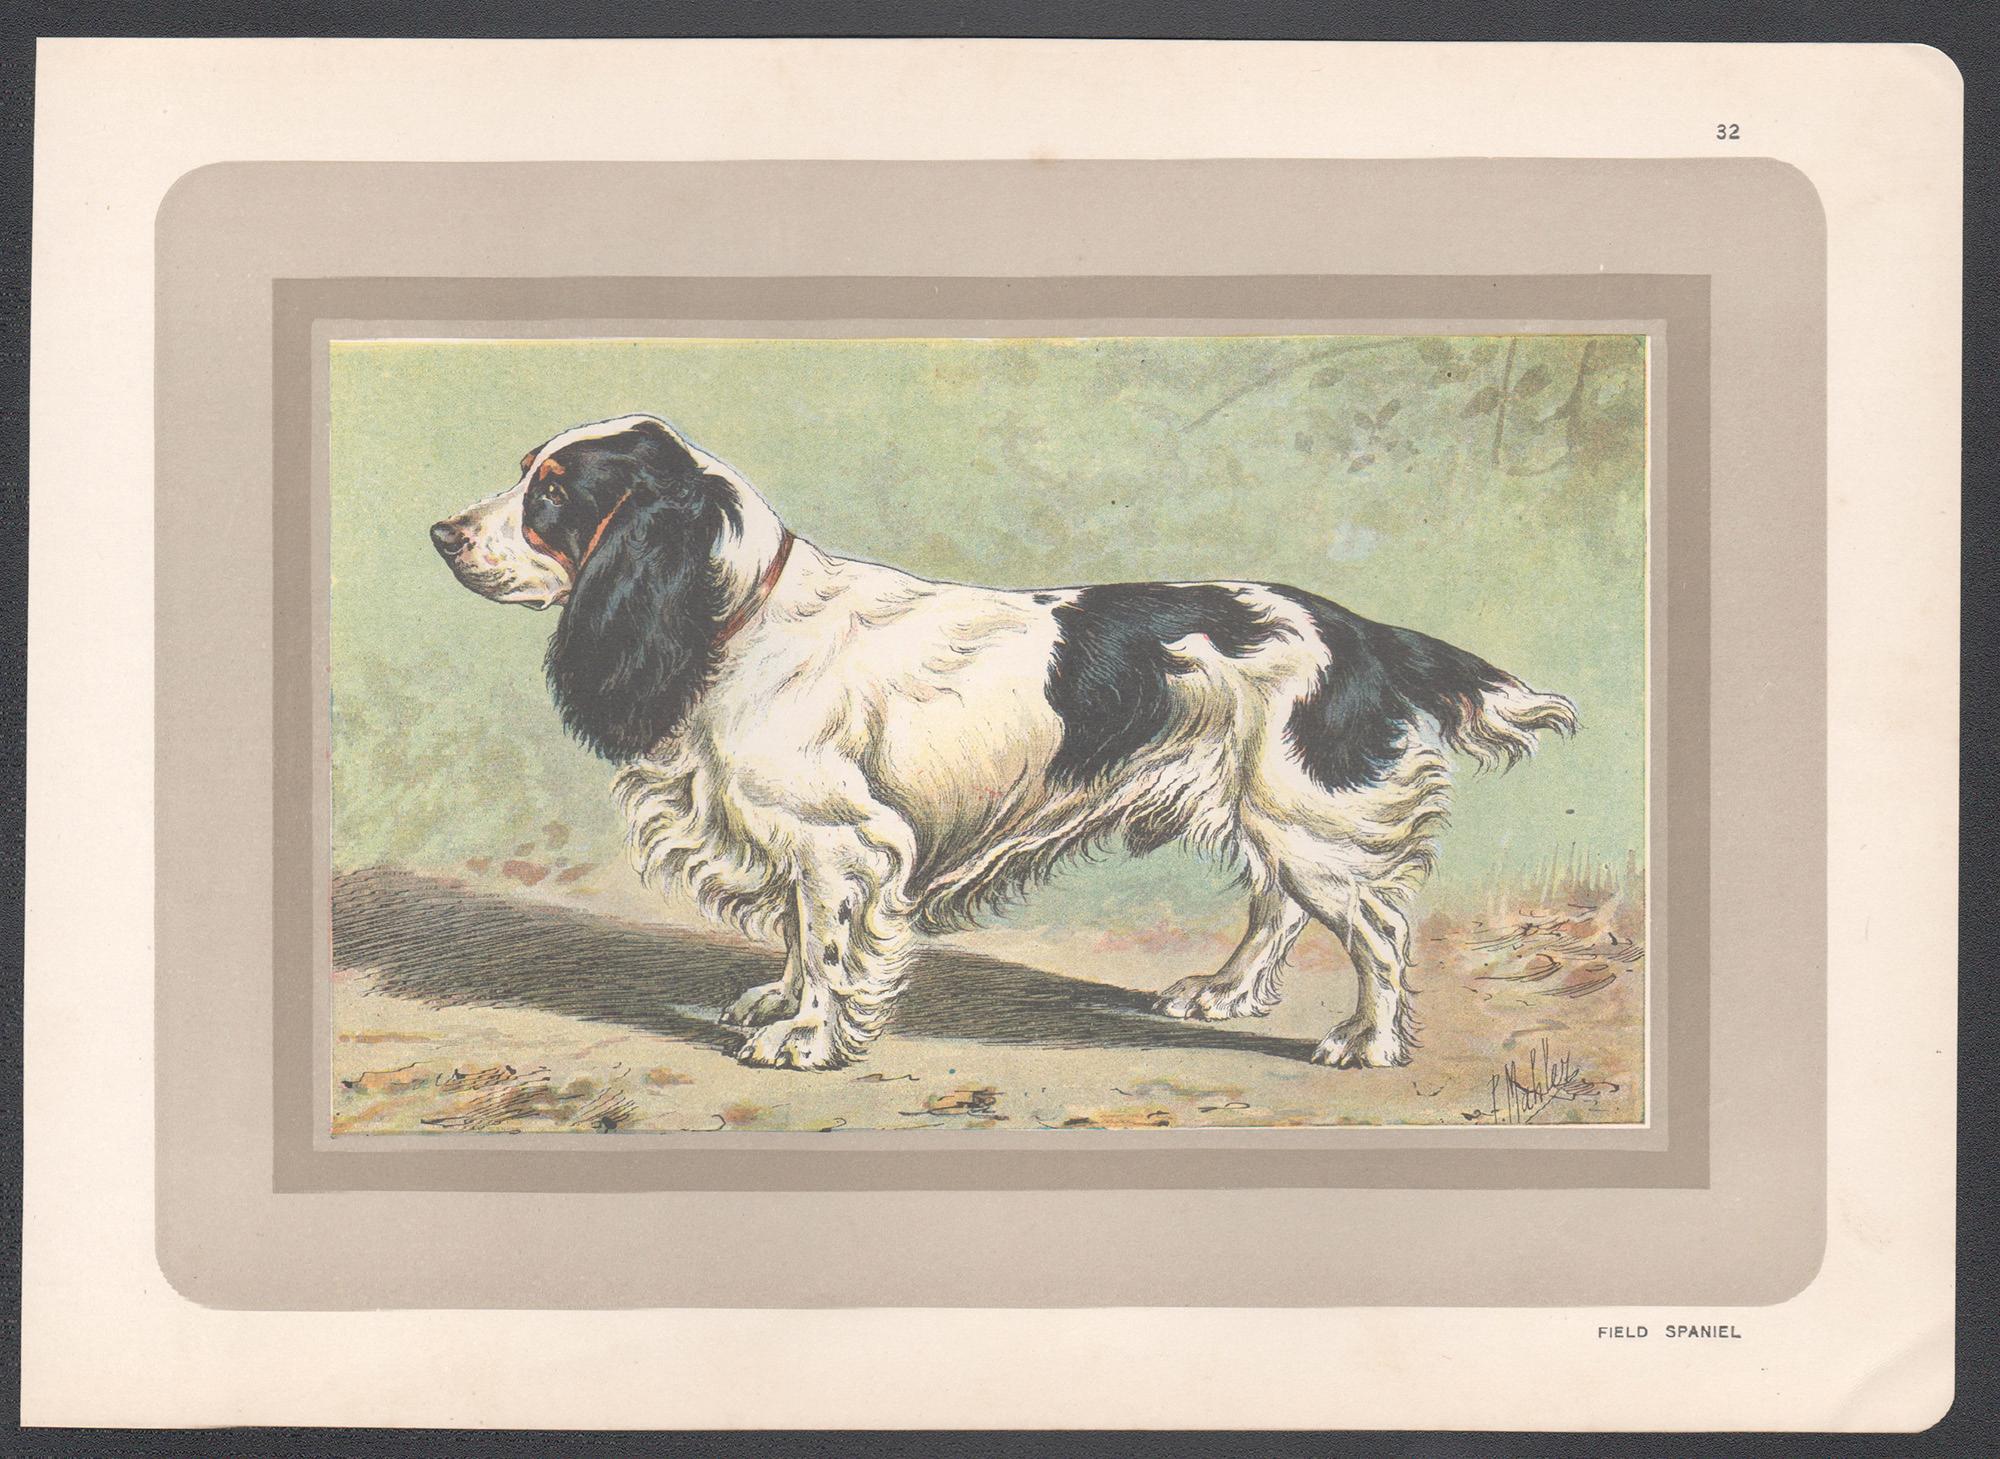 Impression chromolithologique d'un épagneul de champ, chien de chasse français, années 1930 - Print de P. Mahler